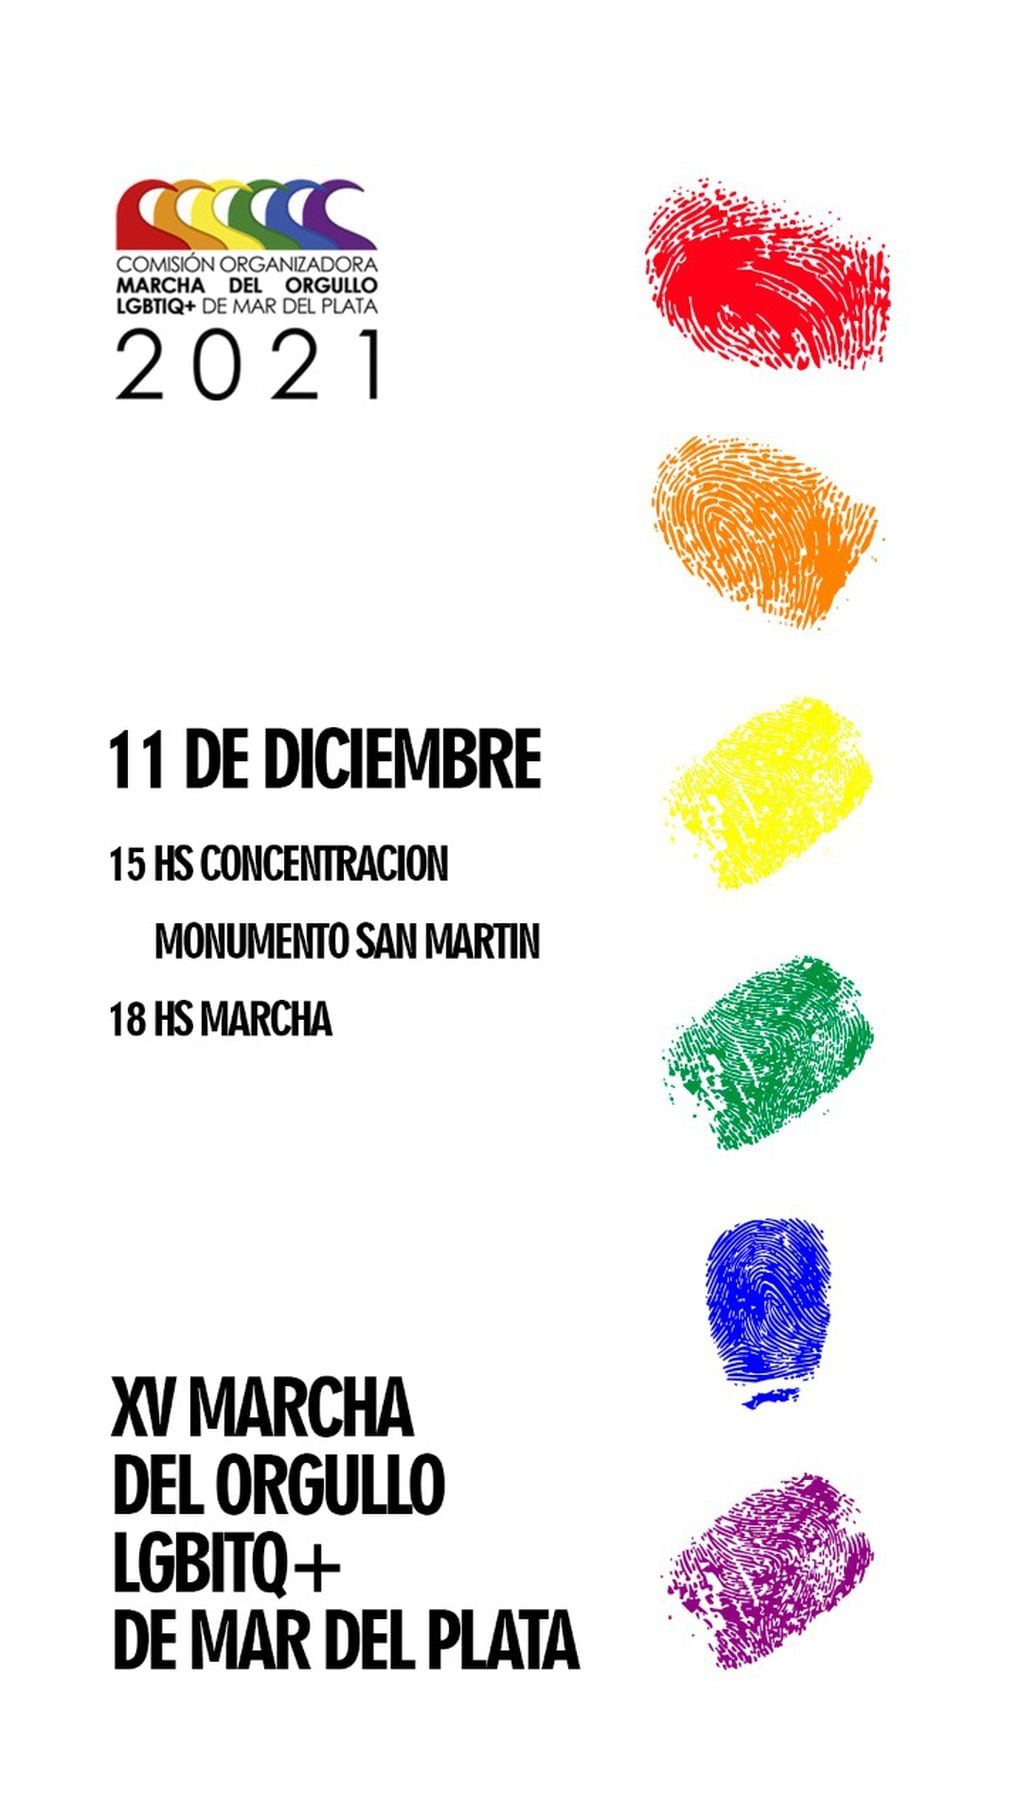 La Comisión Organizadora de la Marcha del Orgullo LGBITQ+ de Mar Del Plata anunció que se manifestarán este sábado 11 de diciembre en Mitre y Luro para seguir luchando por sus derechos.